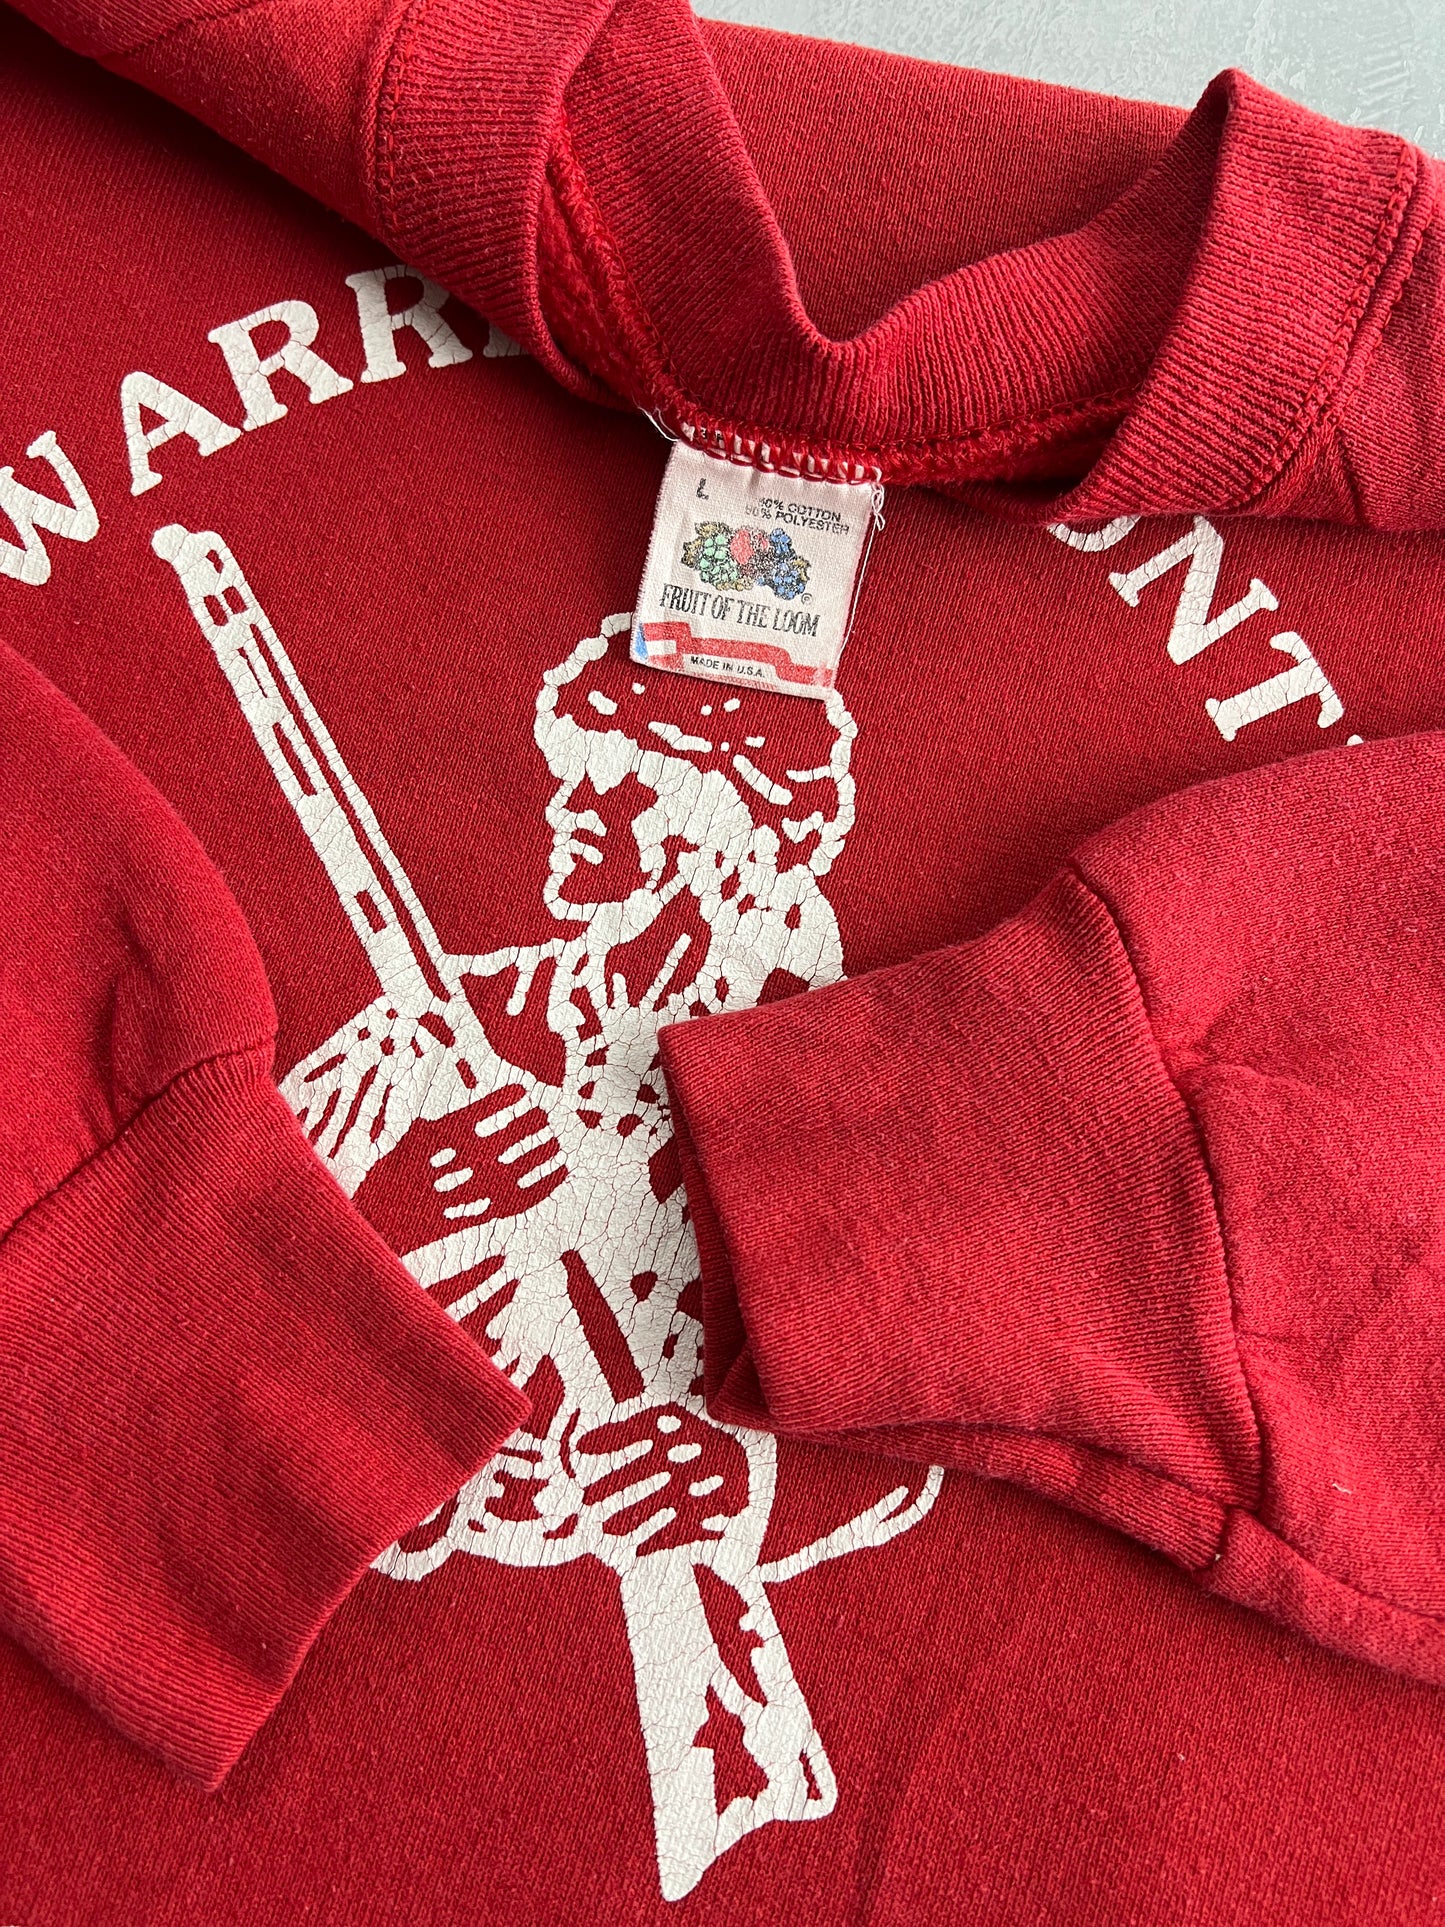 90's Warren County Pioneers Sweatshirt [L]